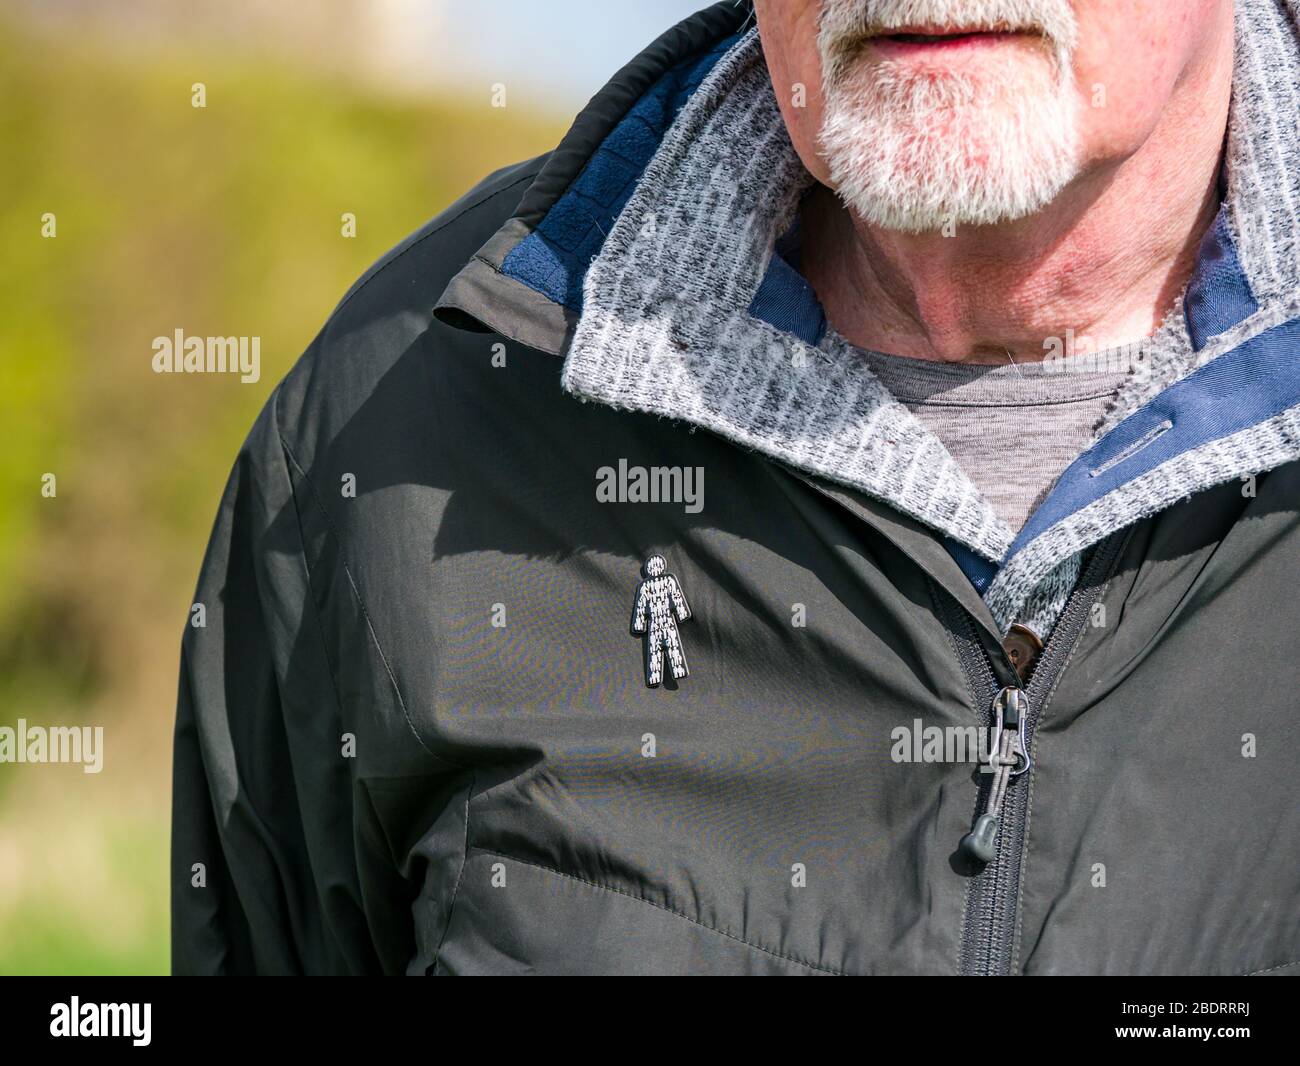 Homme senior avec barbe grise portant un badge caritatif Prostate Cancer UK épinglé à la veste pour sensibiliser le public à l'état de santé commun, Royaume-Uni Banque D'Images